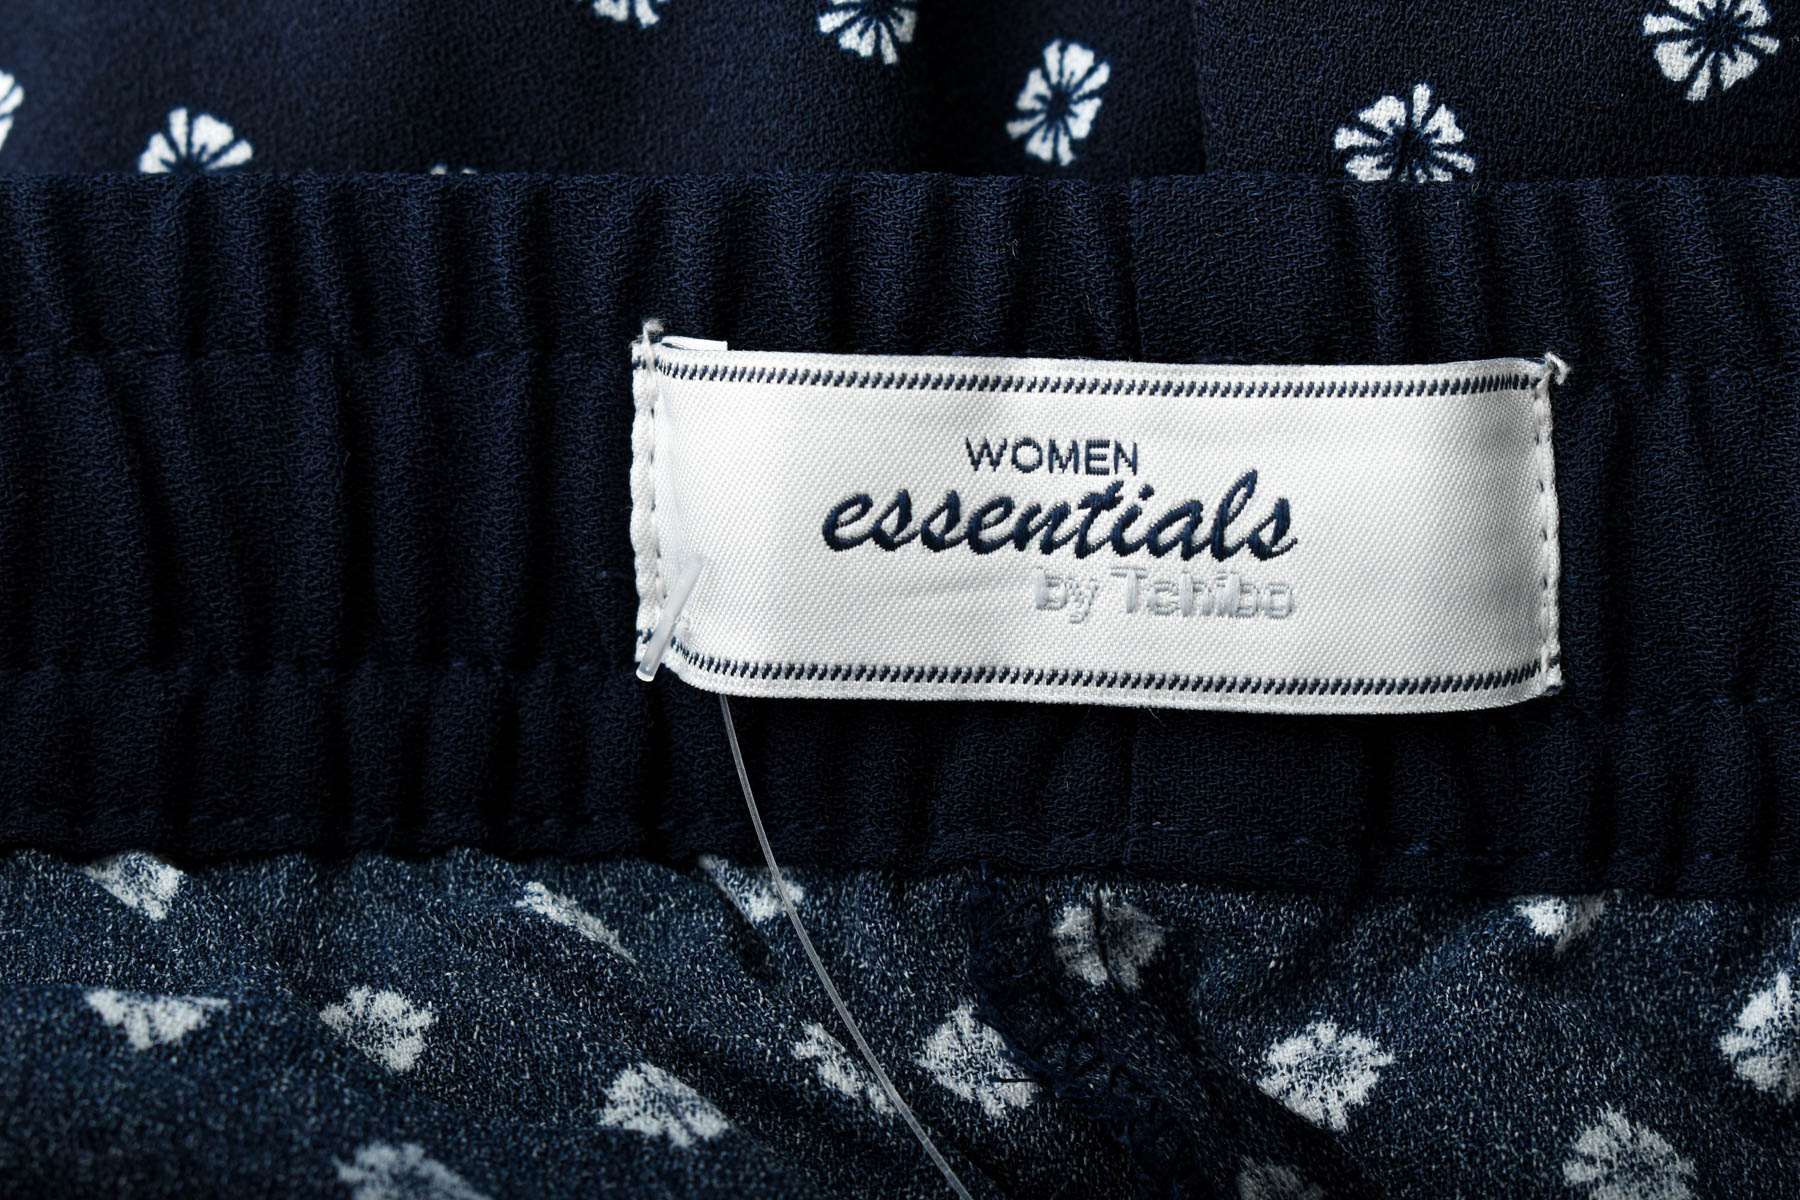 Γυναικείο παντελόνι - WOMEN essentials by Tchibo - 2